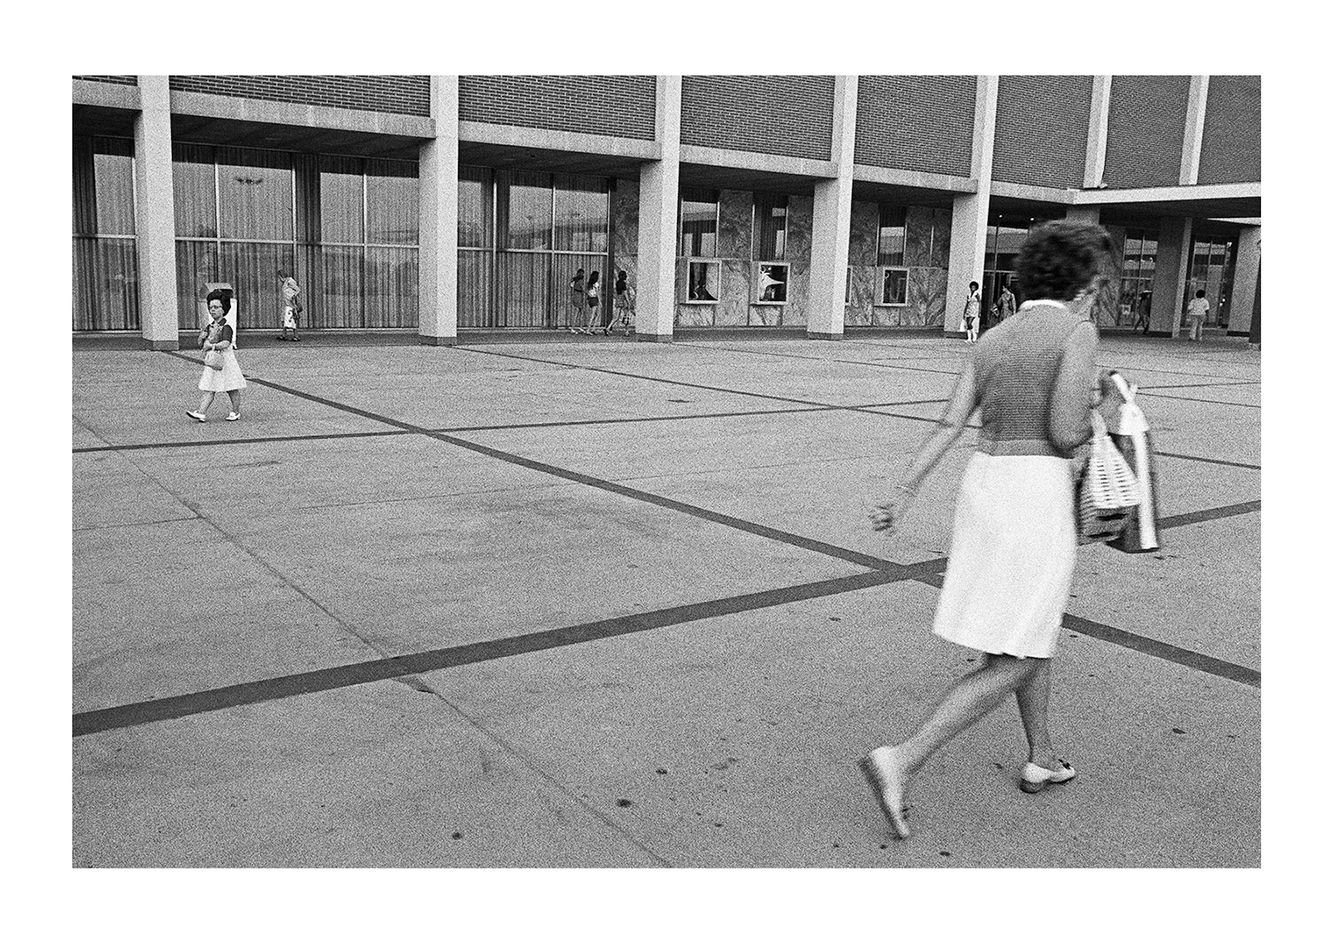 Opposites, Detroit (Northland Shopping Center) 1972